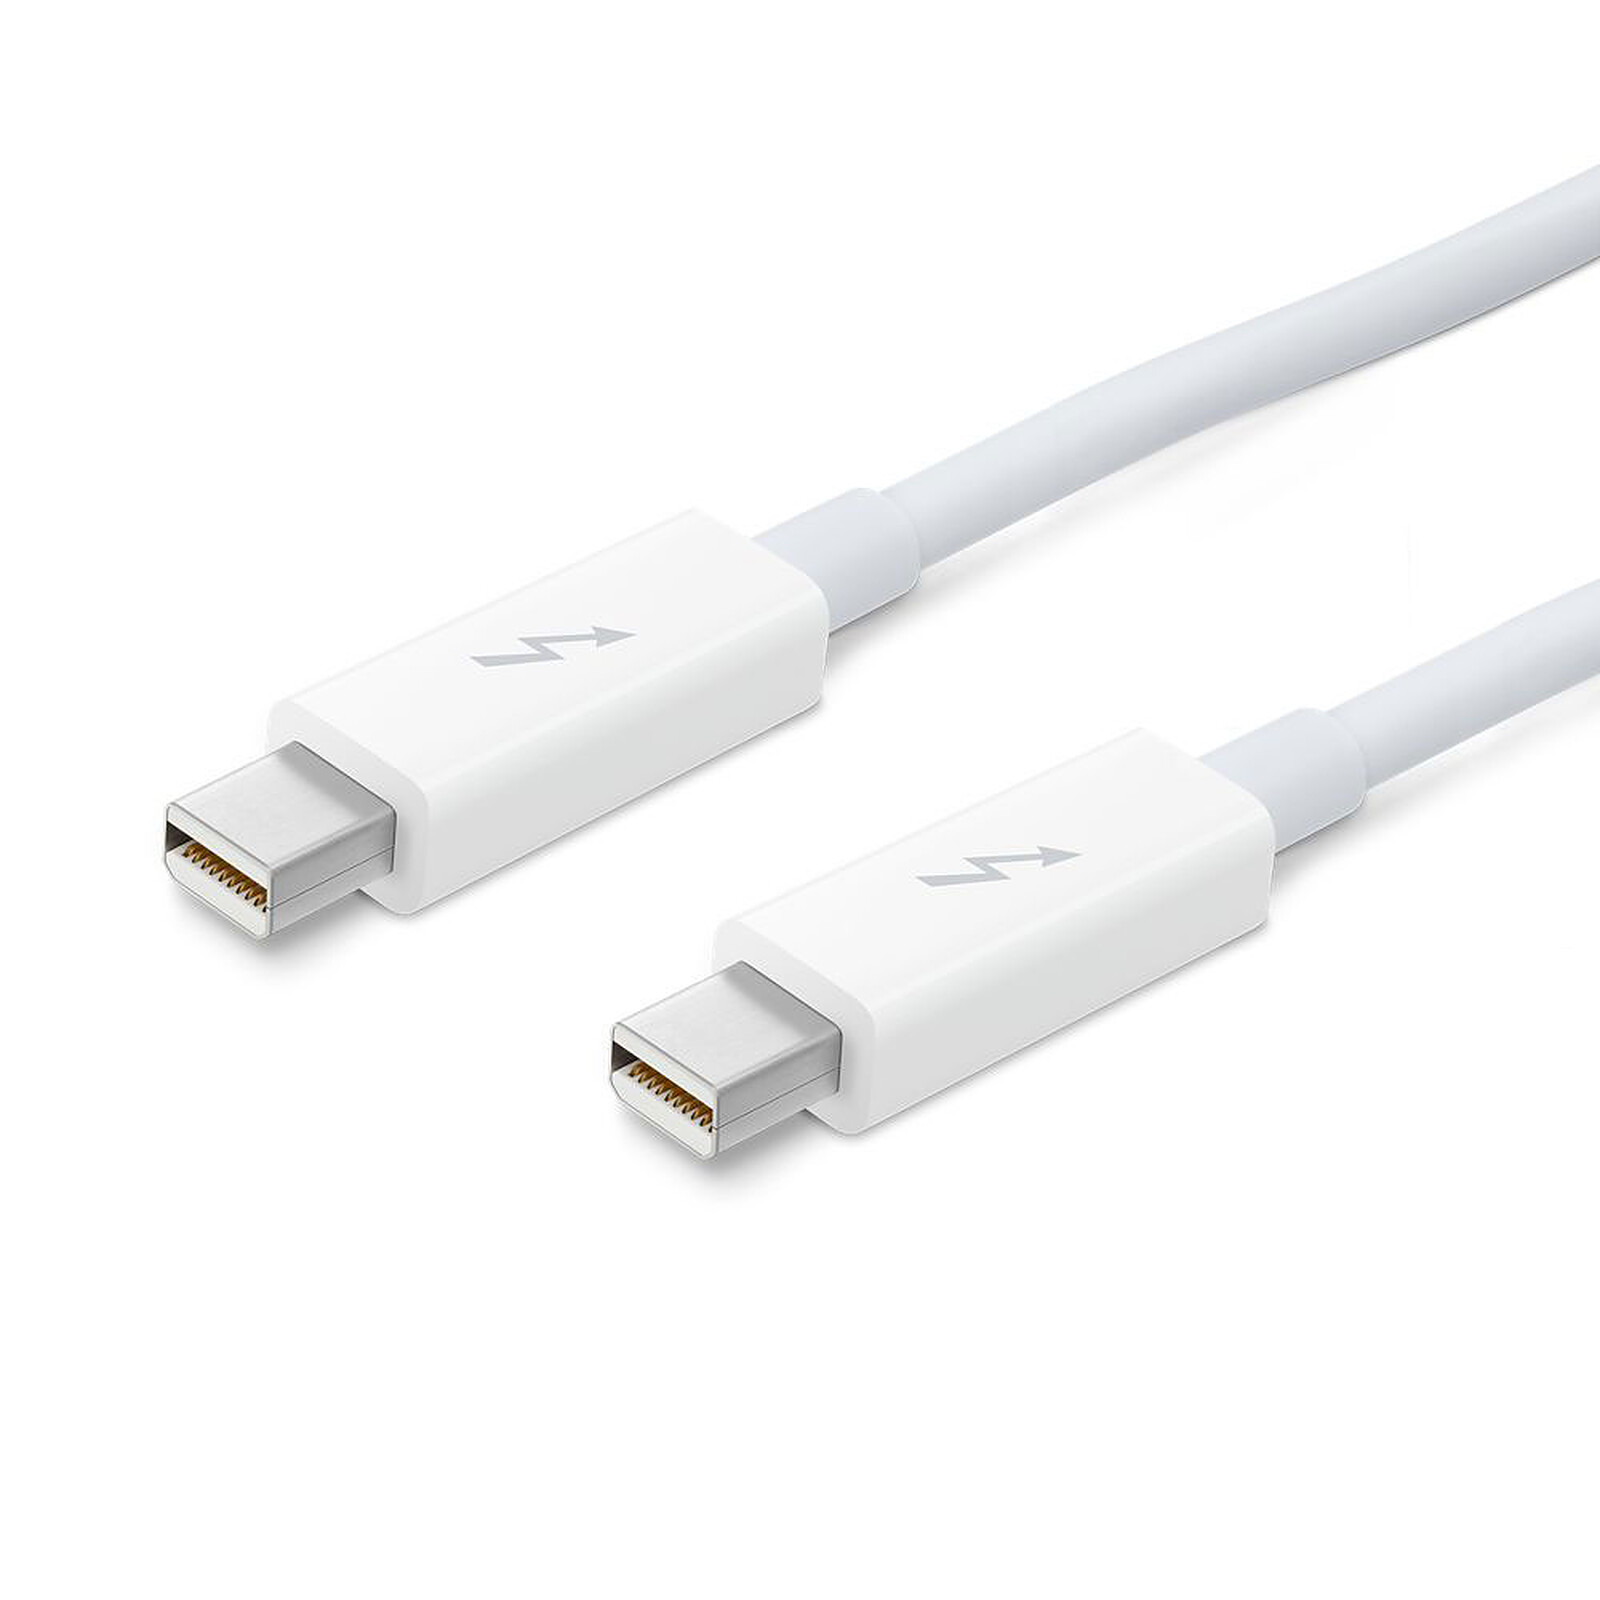 Apple Thunderbolt Cable 2 m - Accessoires Apple - Garantie 3 ans LDLC